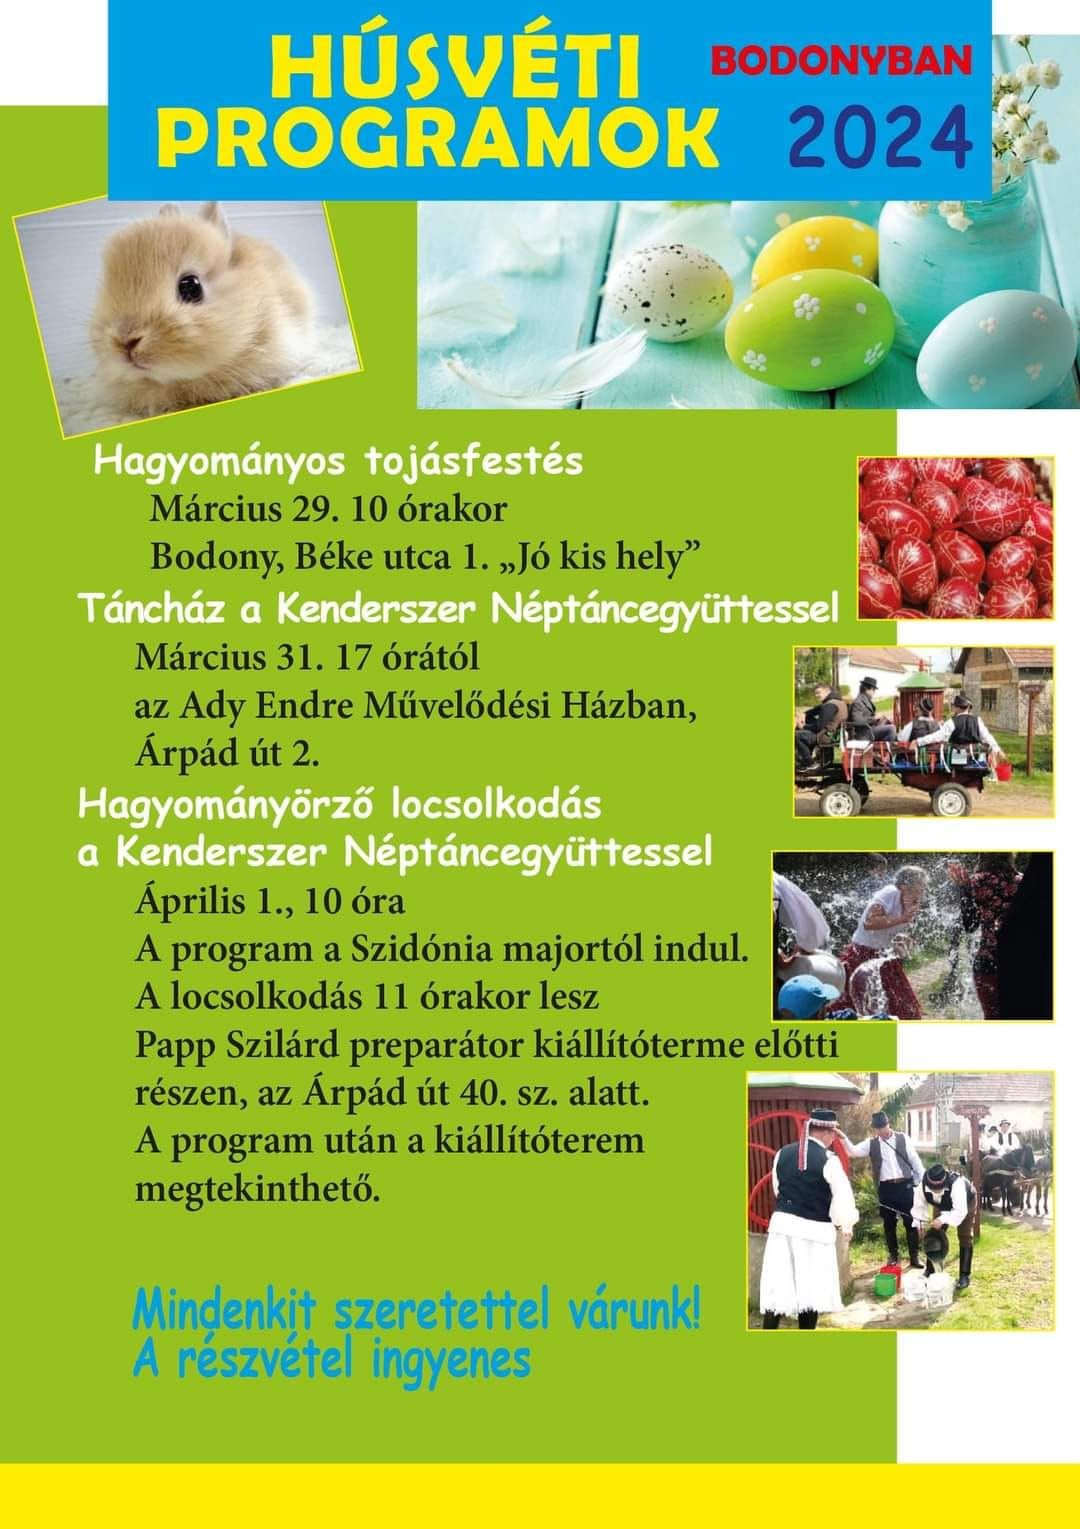 Húsvéti programok Bodonyban